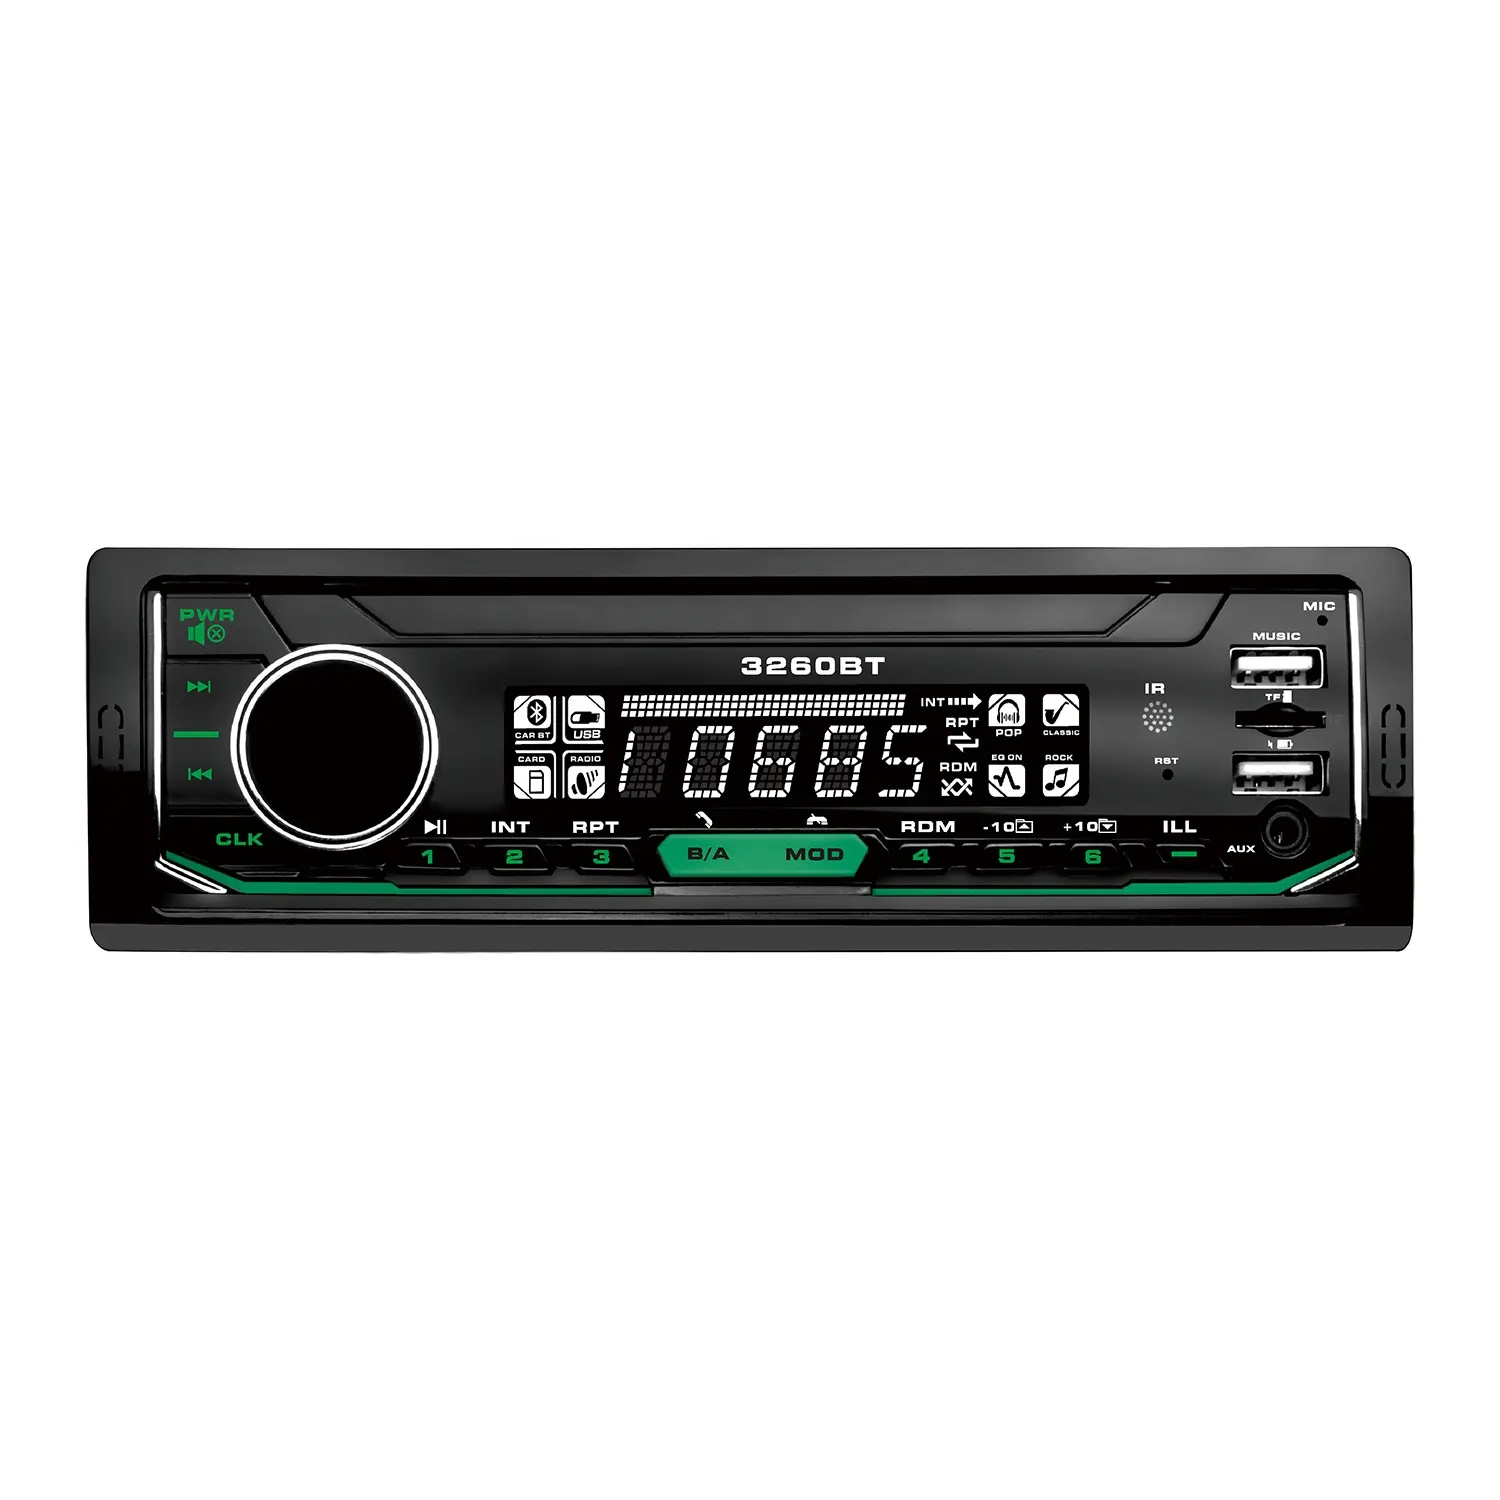 مشغل دي في دي عالمي للسيارة BT 7388ic راديو سيارة للتحكم المحمول مع وظيفة مشغل MP3 بسعر منخفض مخصص رقمي LCD للسيارة